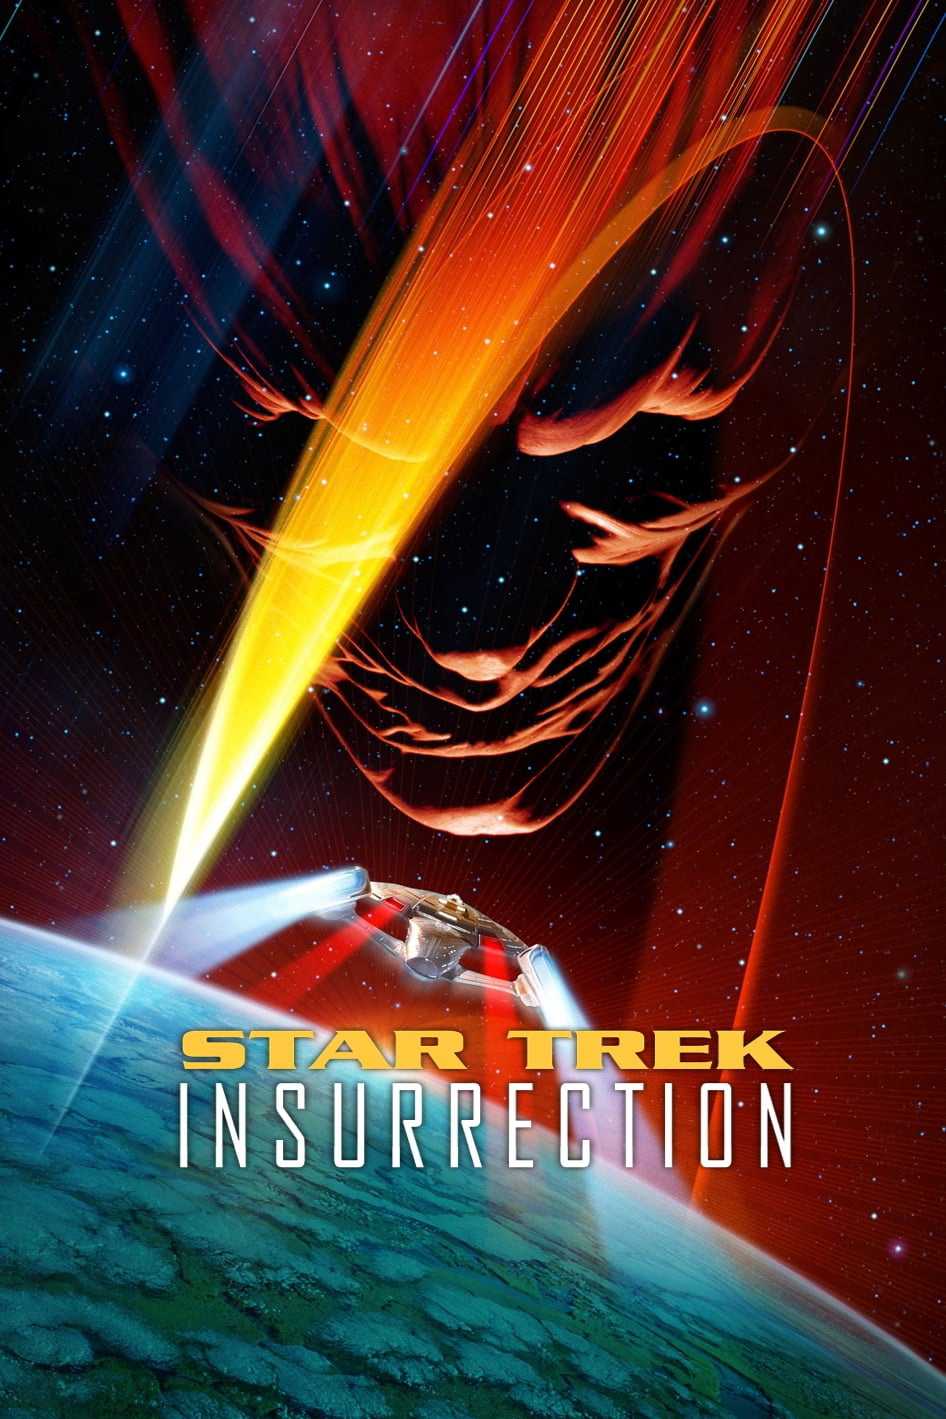 Star trek: khởi nghĩa - Star trek: insurrection